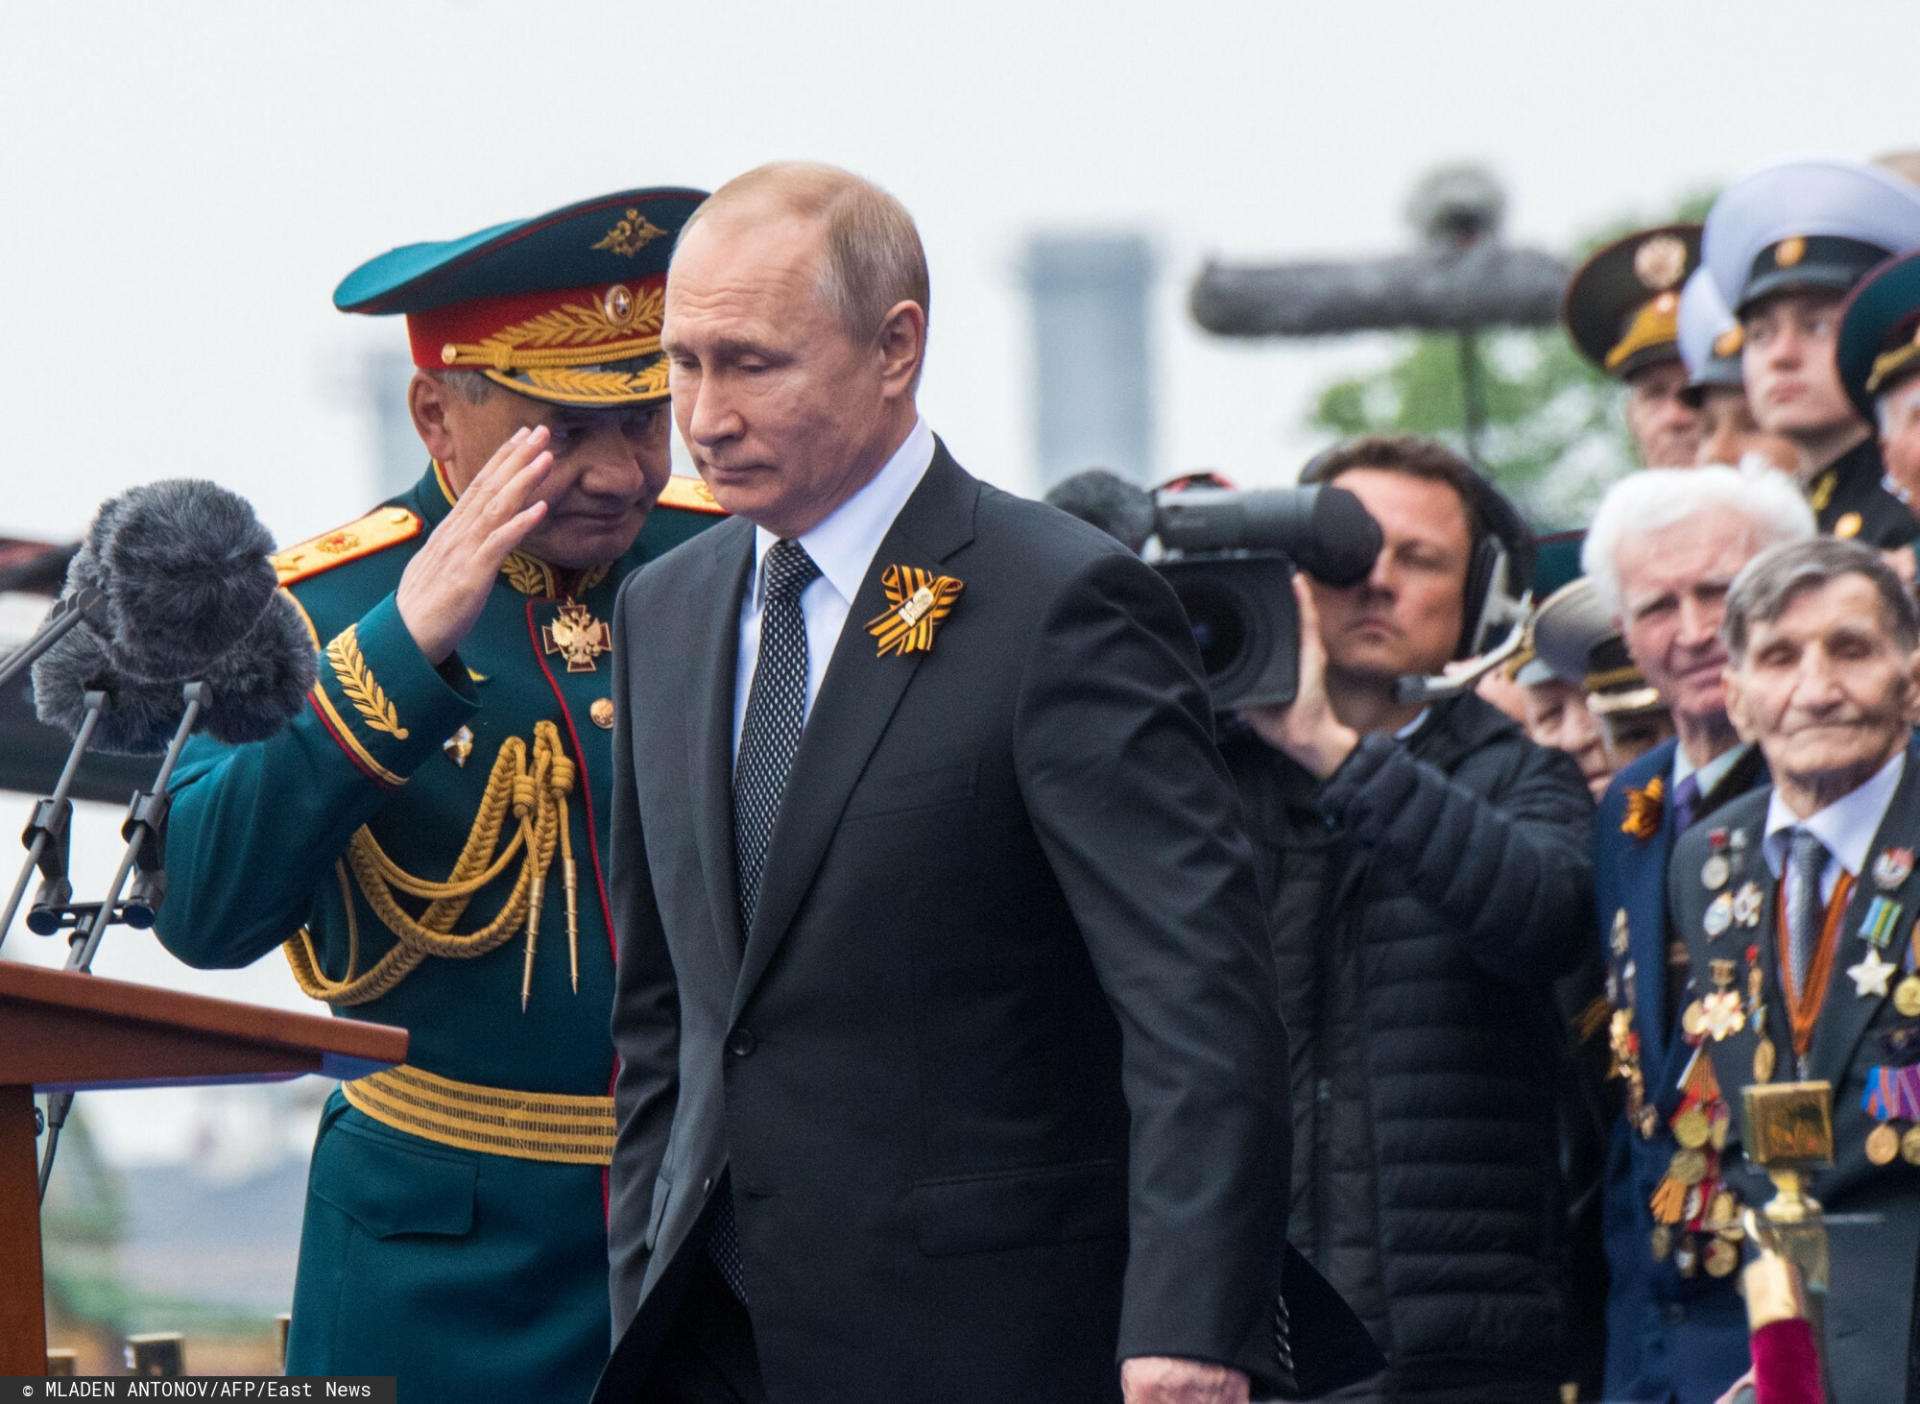 Władimir Putin chciał zawiązać koalicję antyhitlerowską?